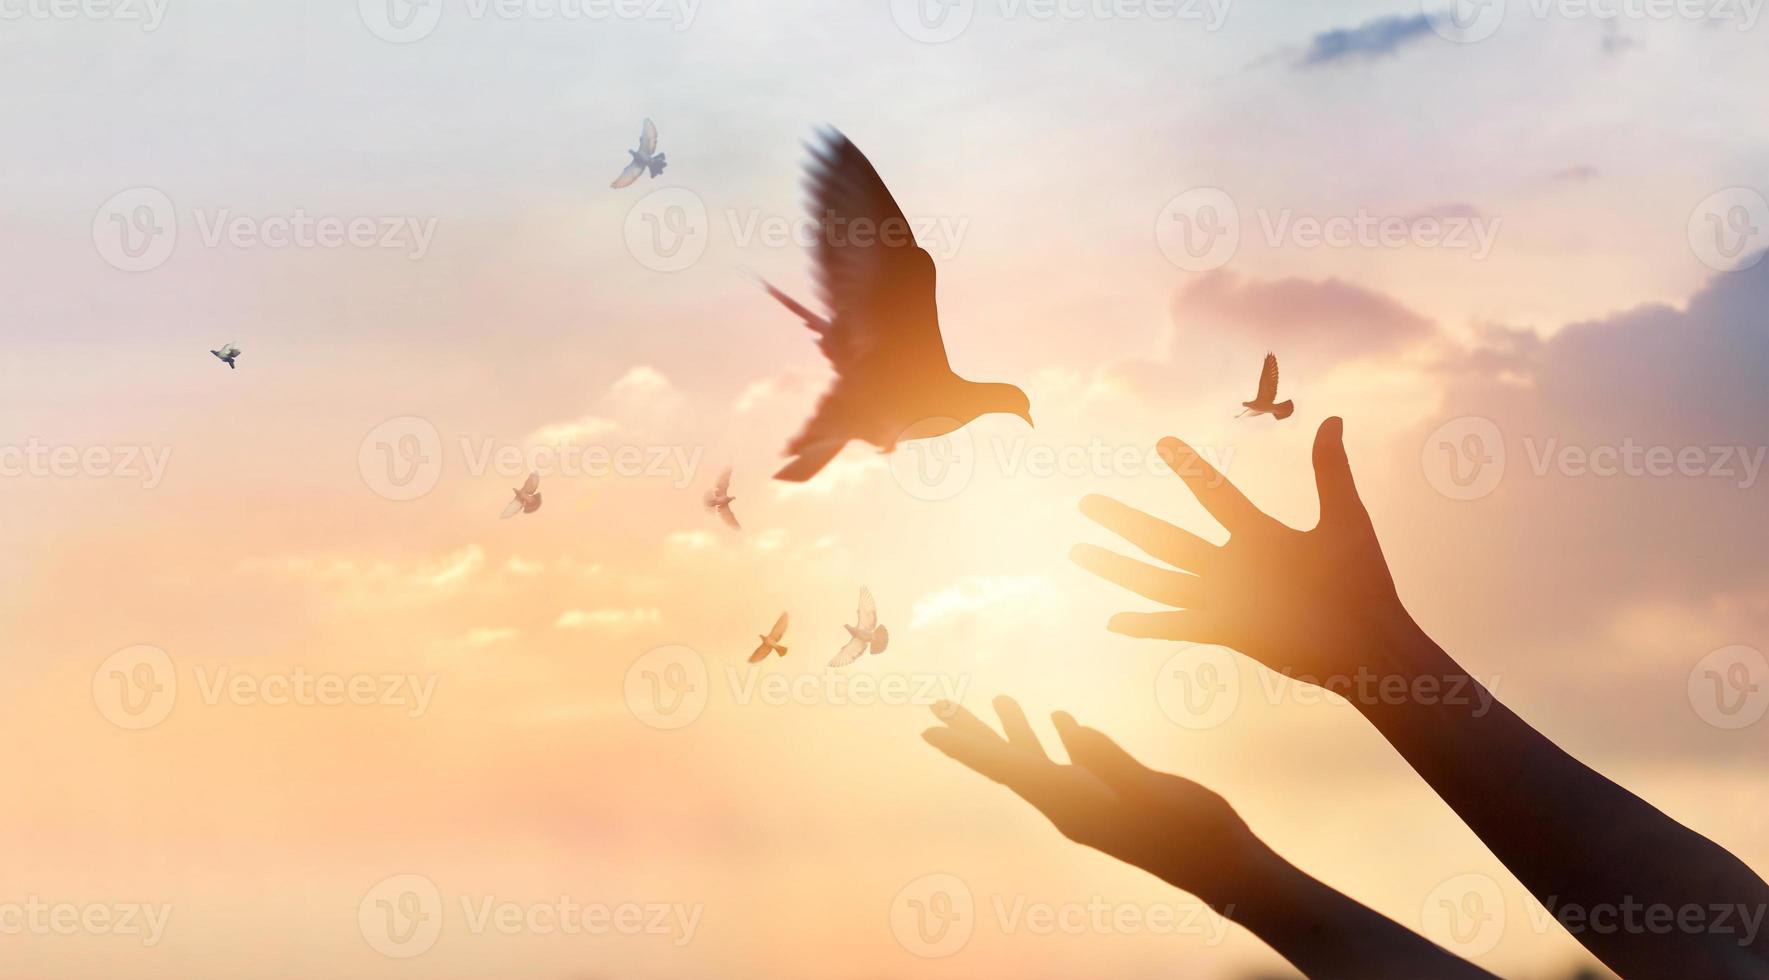 vrouw bidden en vrije vogel genieten van de natuur op zonsondergang achtergrond, hoop concept foto